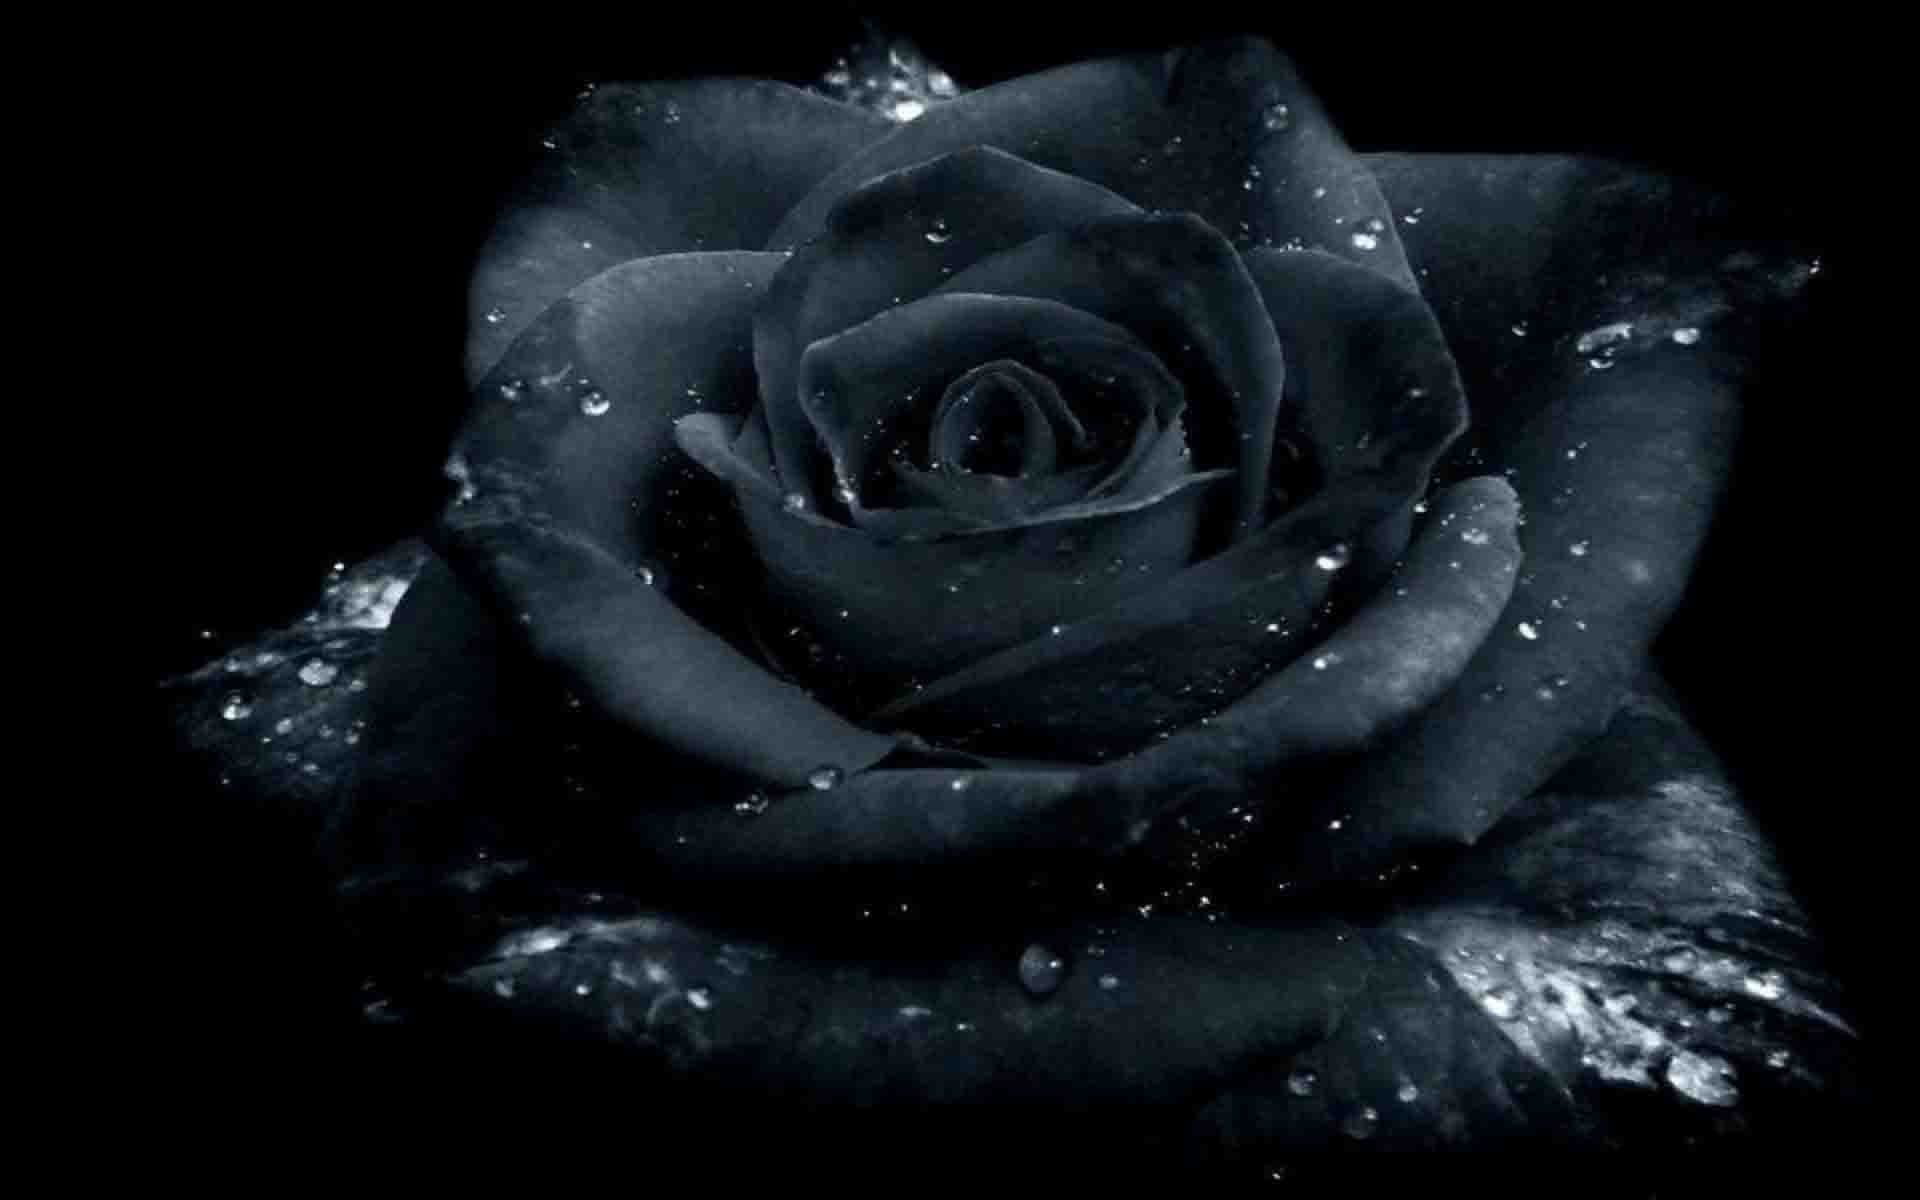 Hoa hồng xanh tuyệt đẹp mang nhiều ý nghĩa